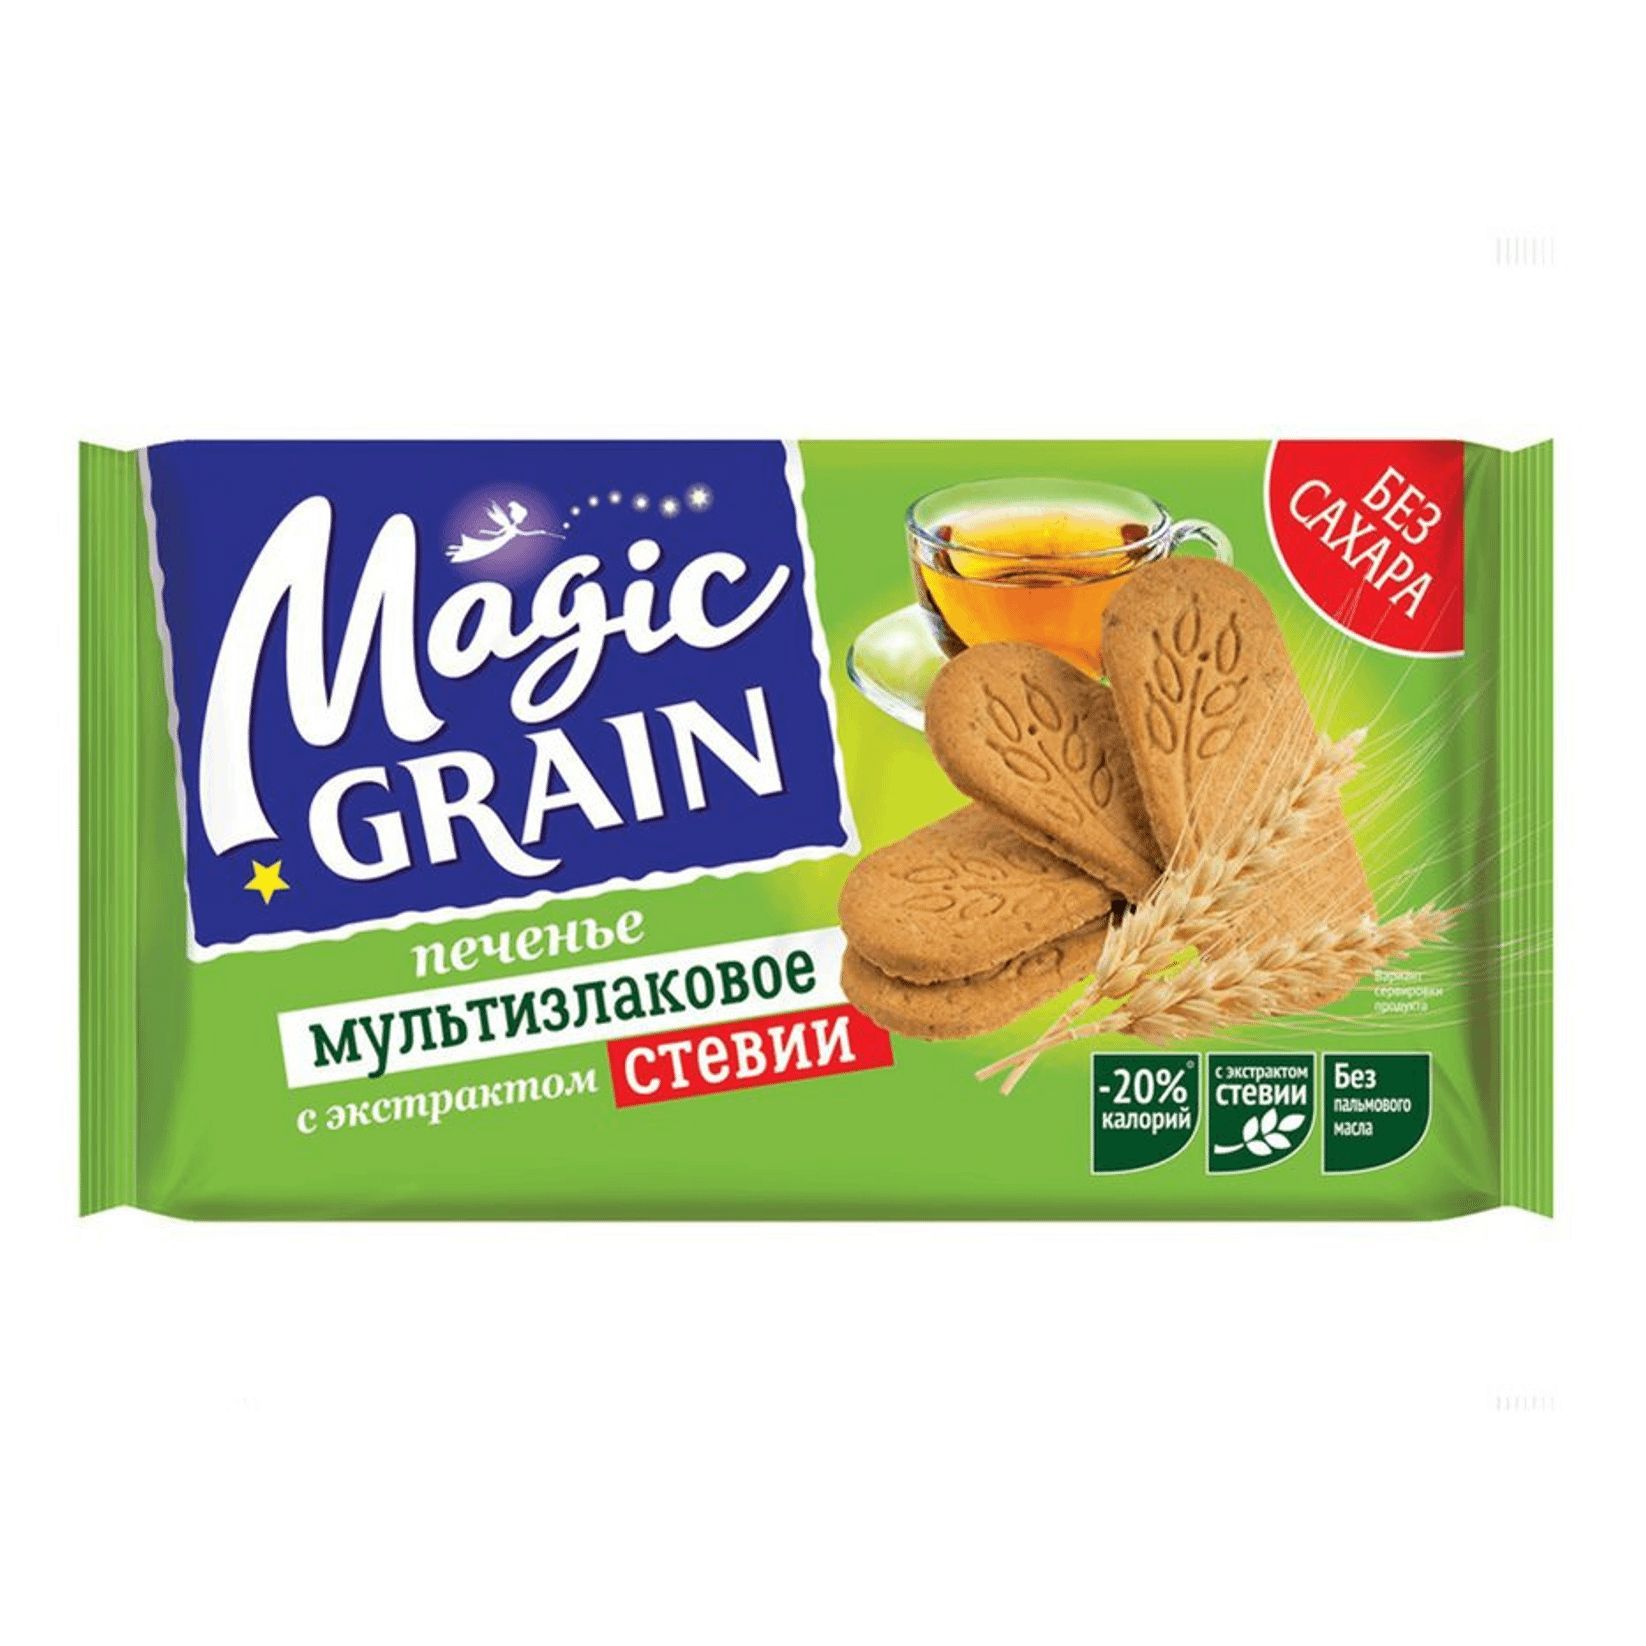 Magic grain. Magic Grain печенье мультизлаковое с экстрактом стевии. Печенье Magic Grain 150. Magic Grain 150г. Печенье Magic Grain 180г.